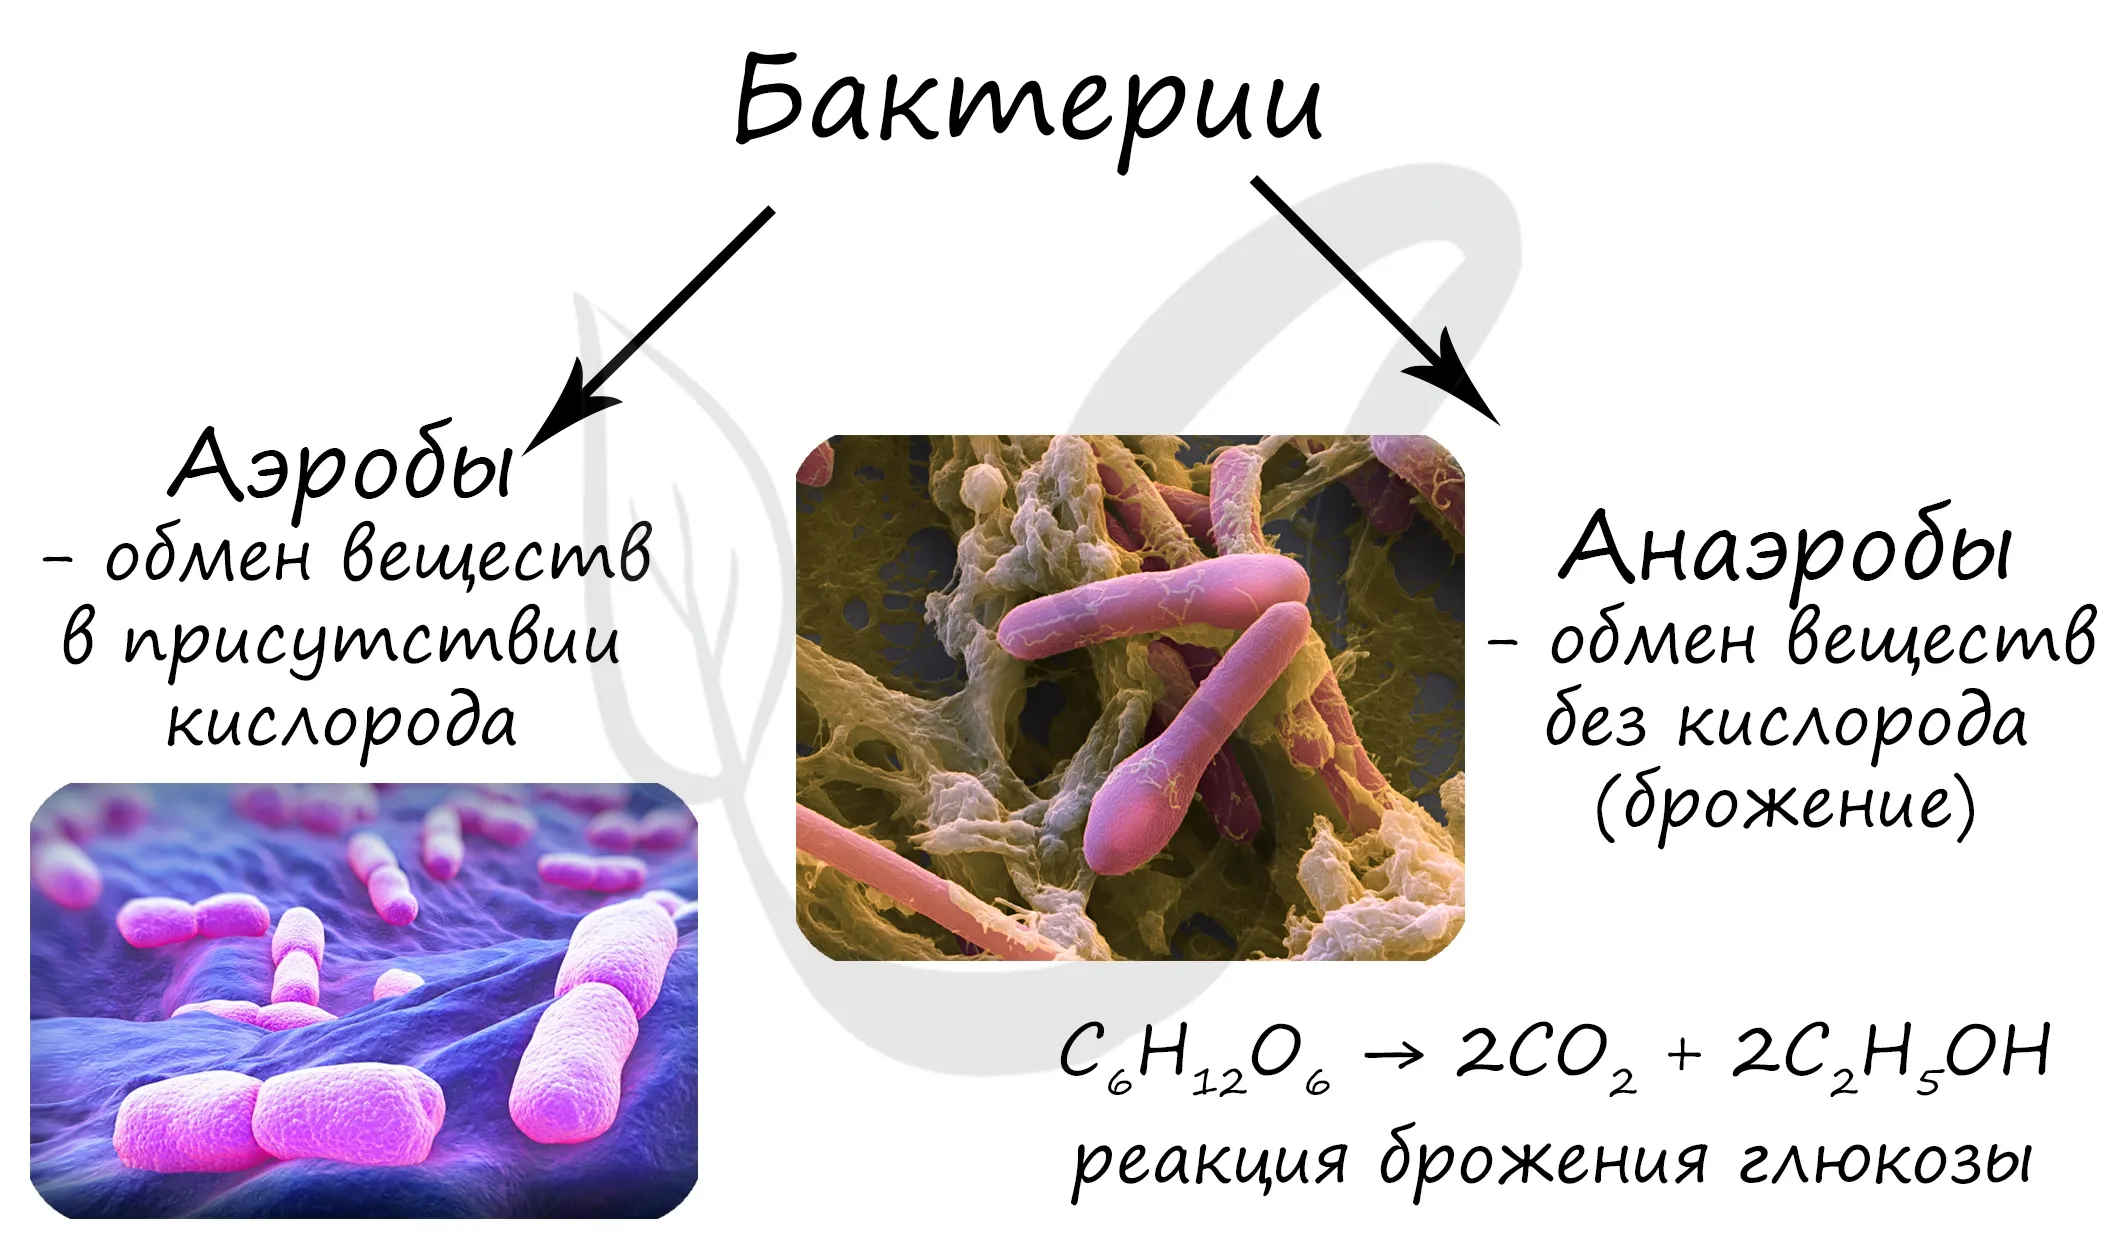 Какие функции выполняют бактерии в организме человека